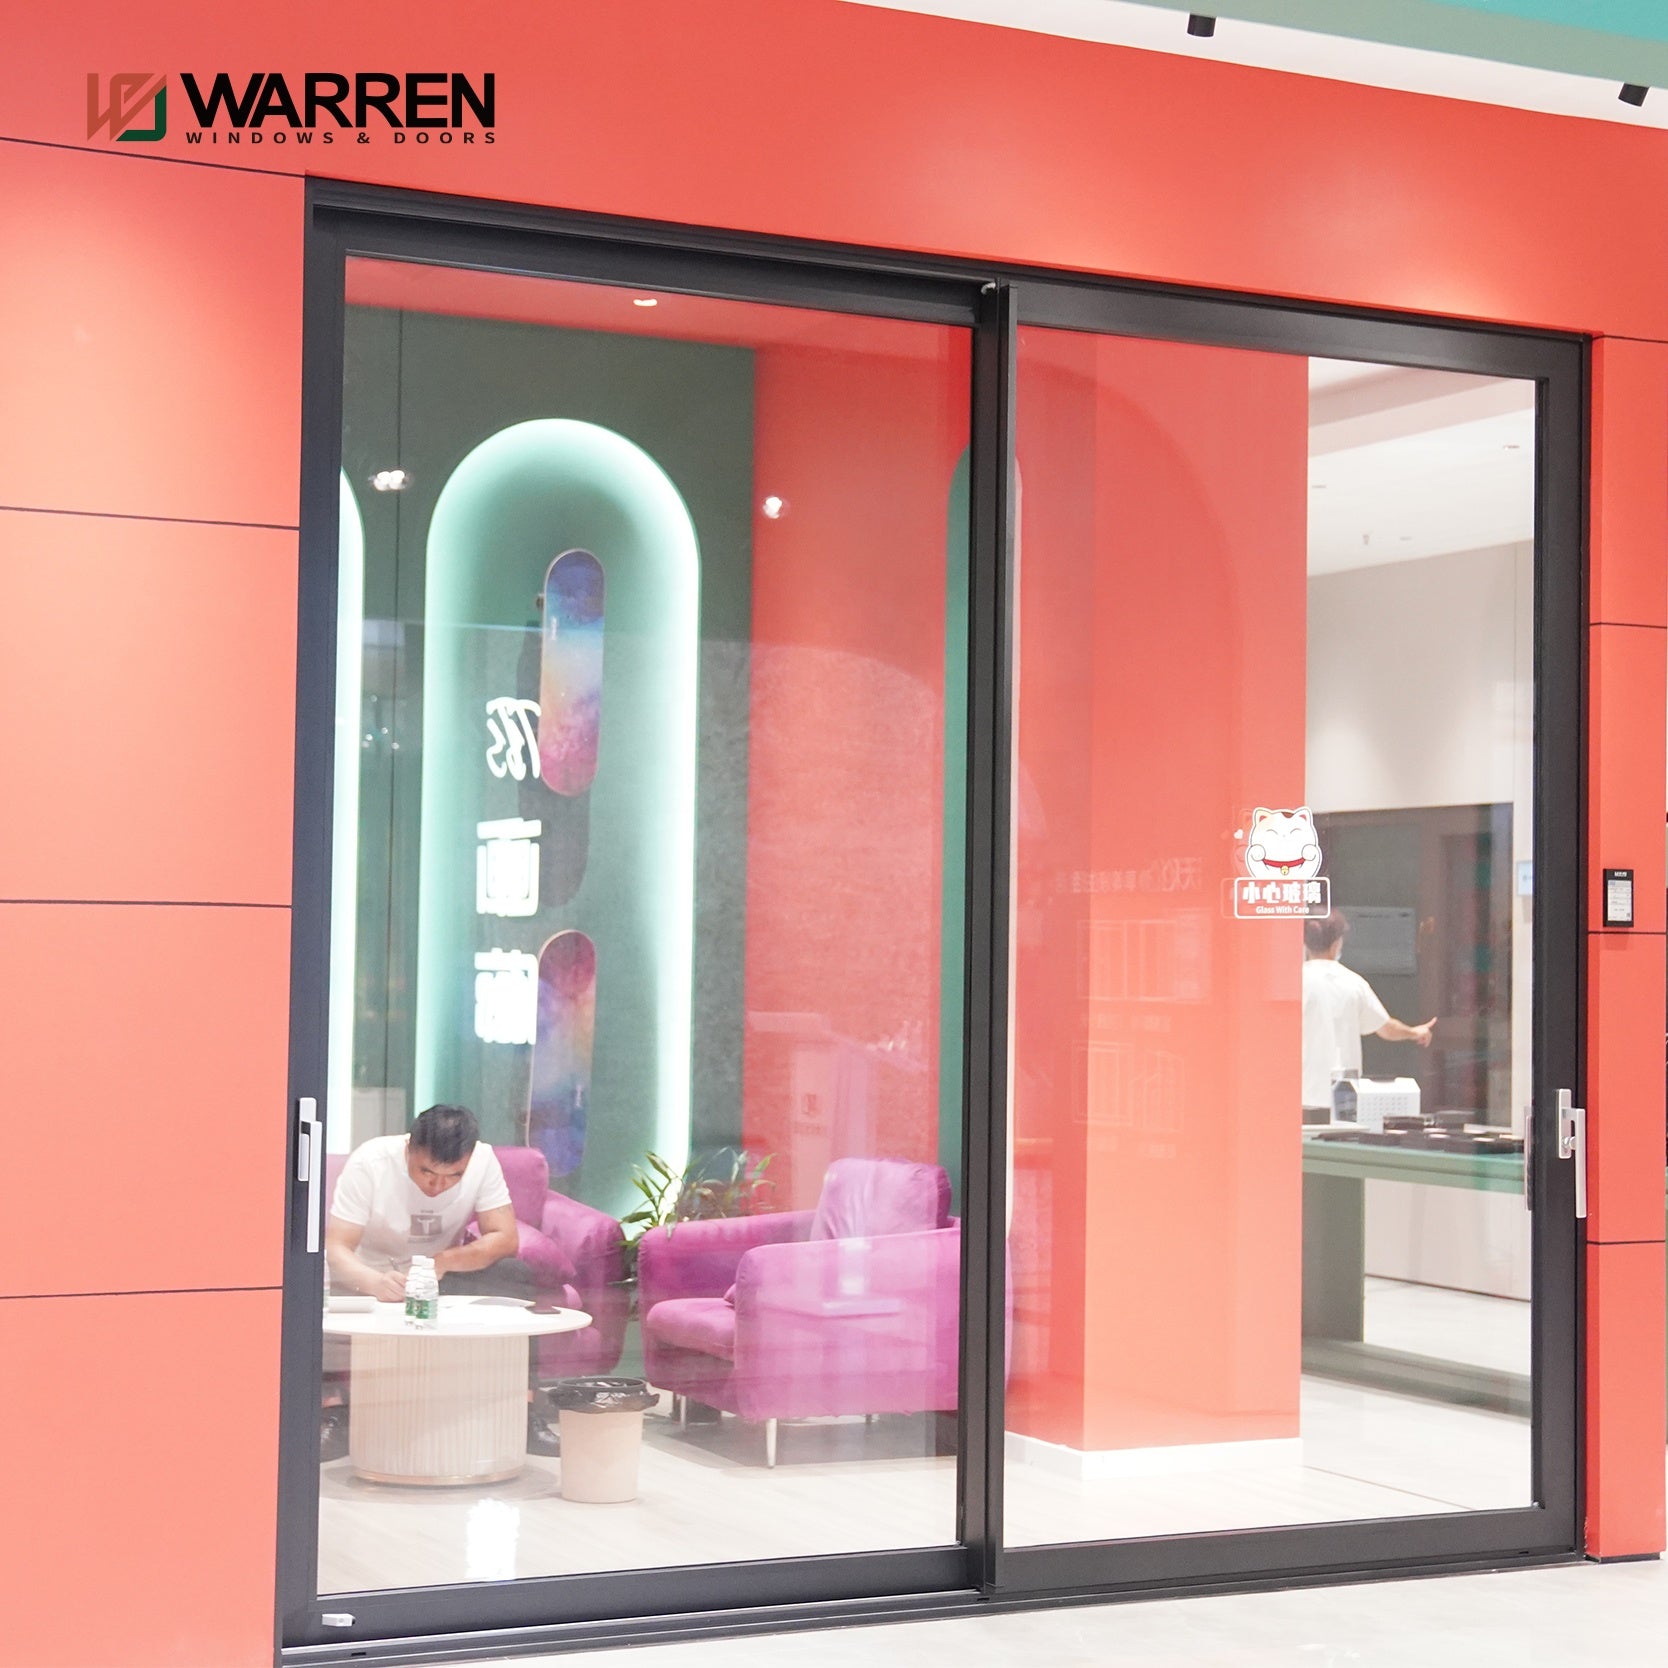 Warren Sliding Glass Doors Windproof Waterproof Aluminium Double Glass Sliding Door New Construction Exterior Walls Designs